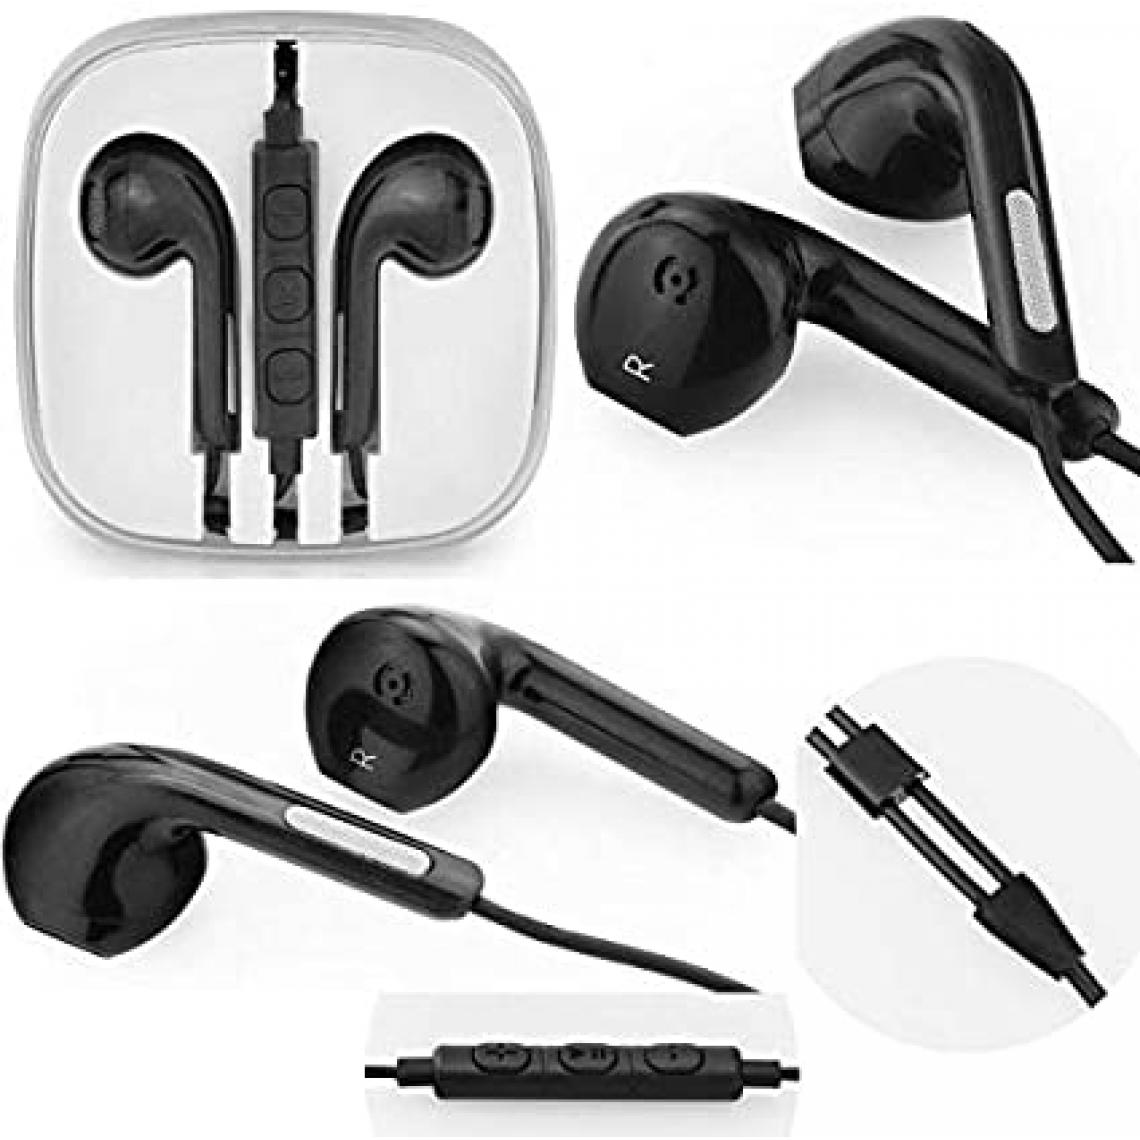 Ozzzo - Kit pieton + ecouteur + micro ozzzo noir pour Chuwi HiPad X - Ecouteurs intra-auriculaires